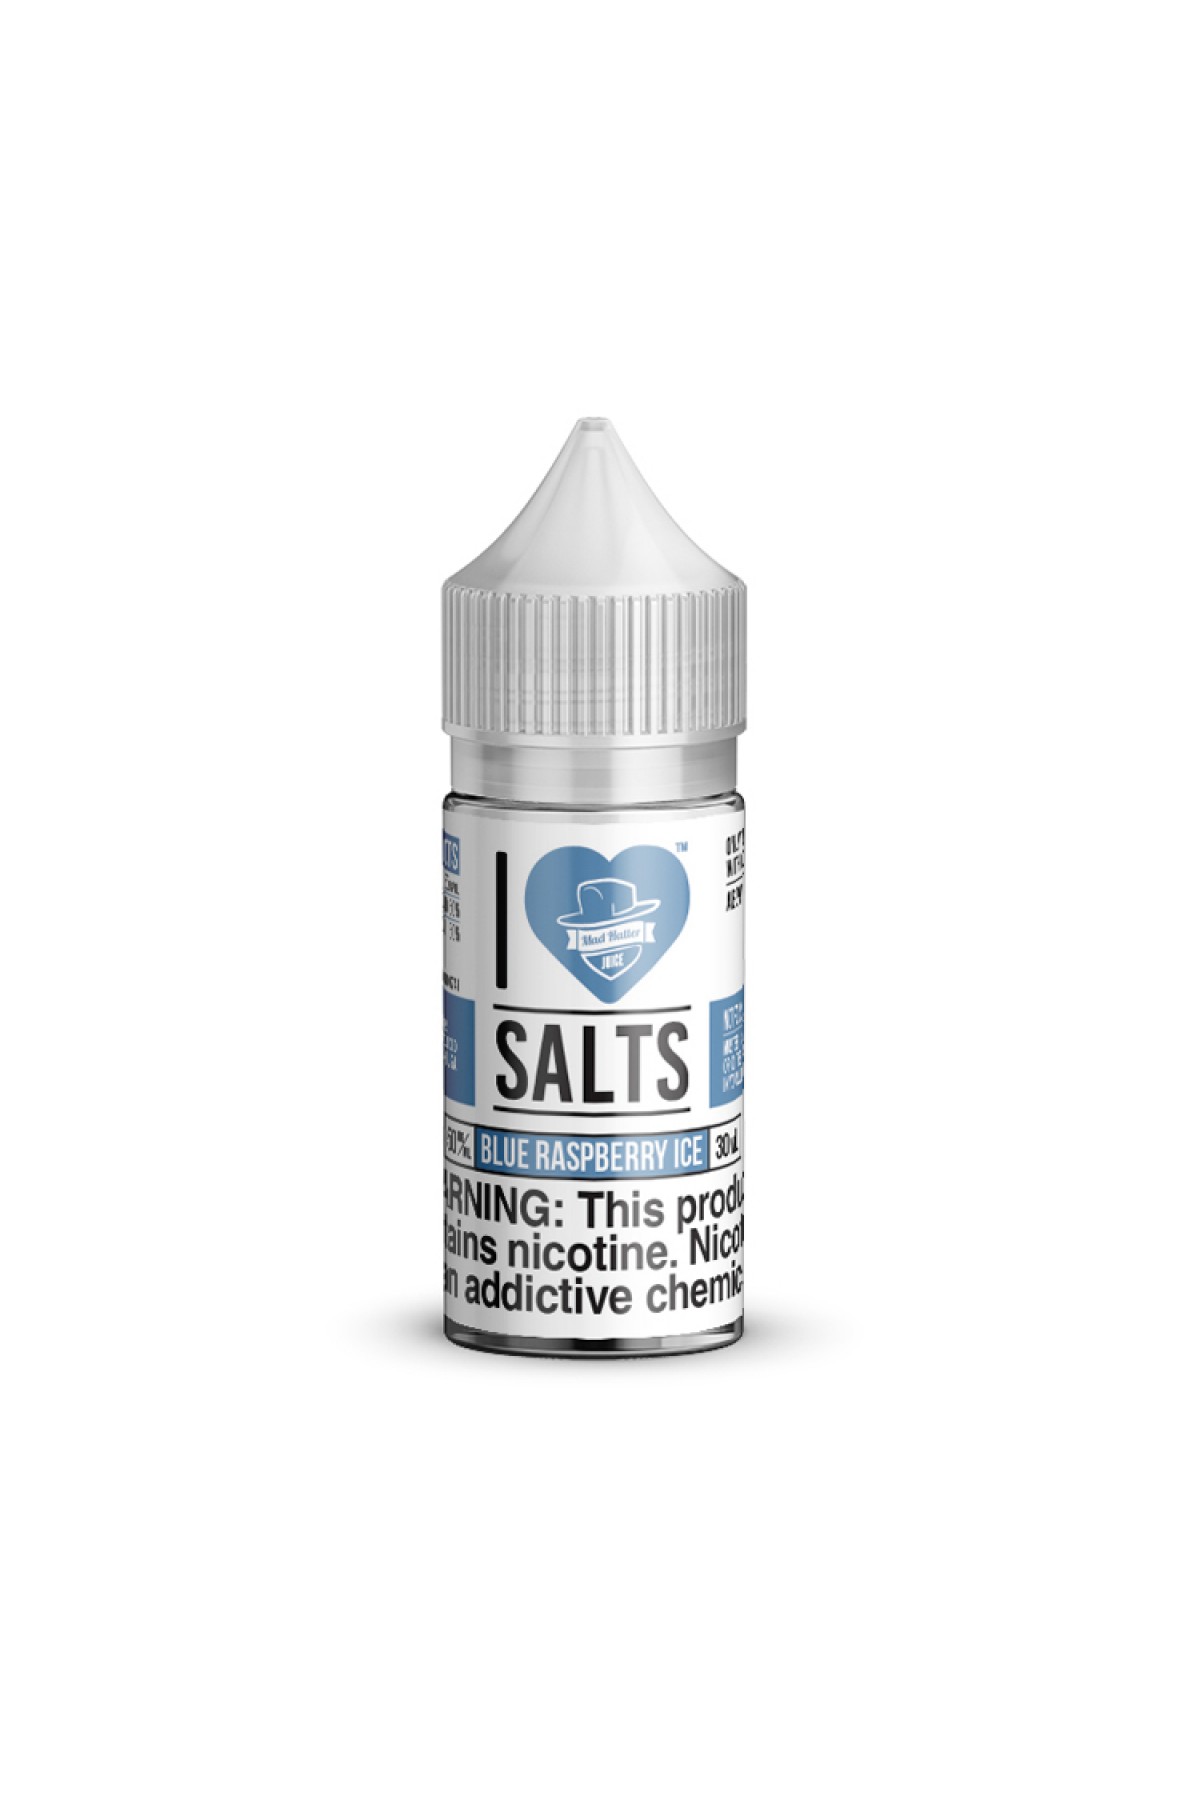 I Love Salts - Blue Raspberry ICE Salt Likit (30ML)